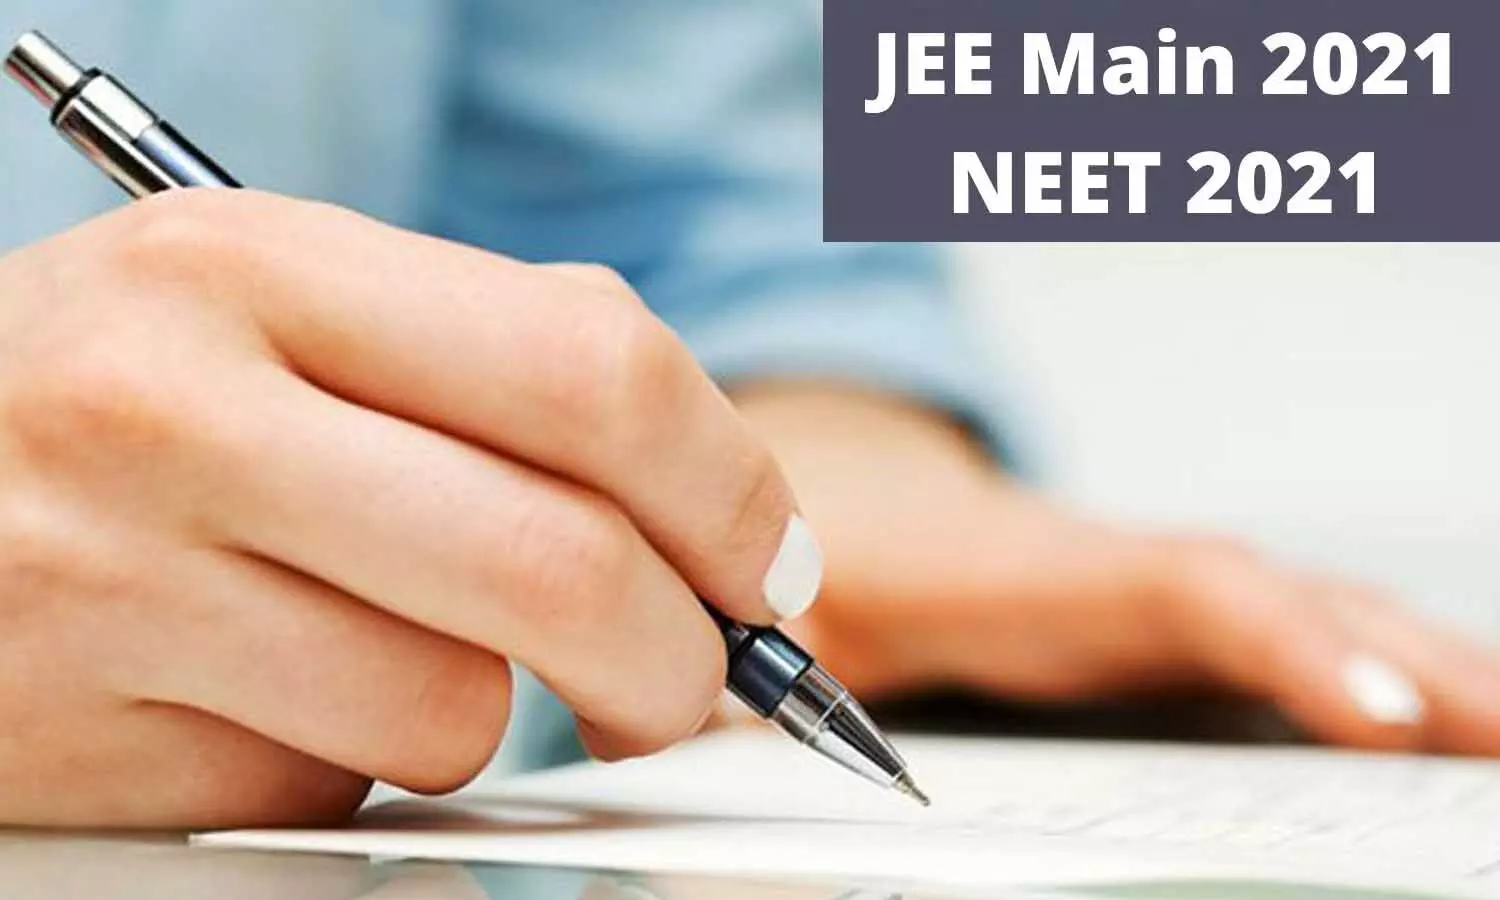 NEET और JEE Main परीक्षाएं नहीं होंगी रद्द, जल्द जारी होगा Exam Schedule